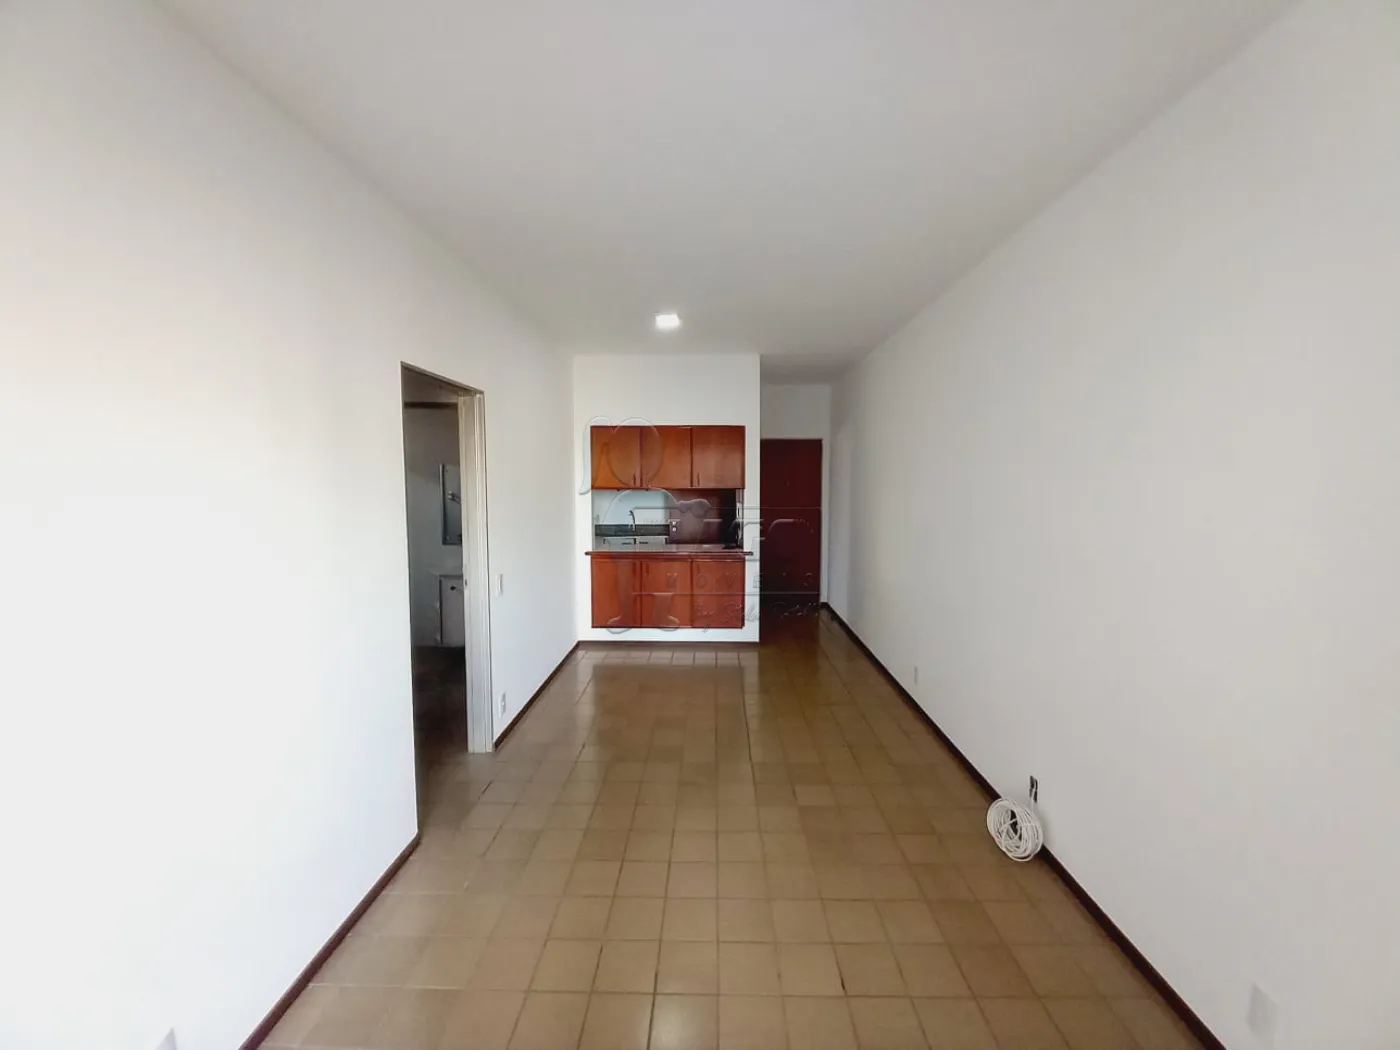 Alugar Apartamentos / Padrão em Ribeirão Preto R$ 1.430,00 - Foto 4